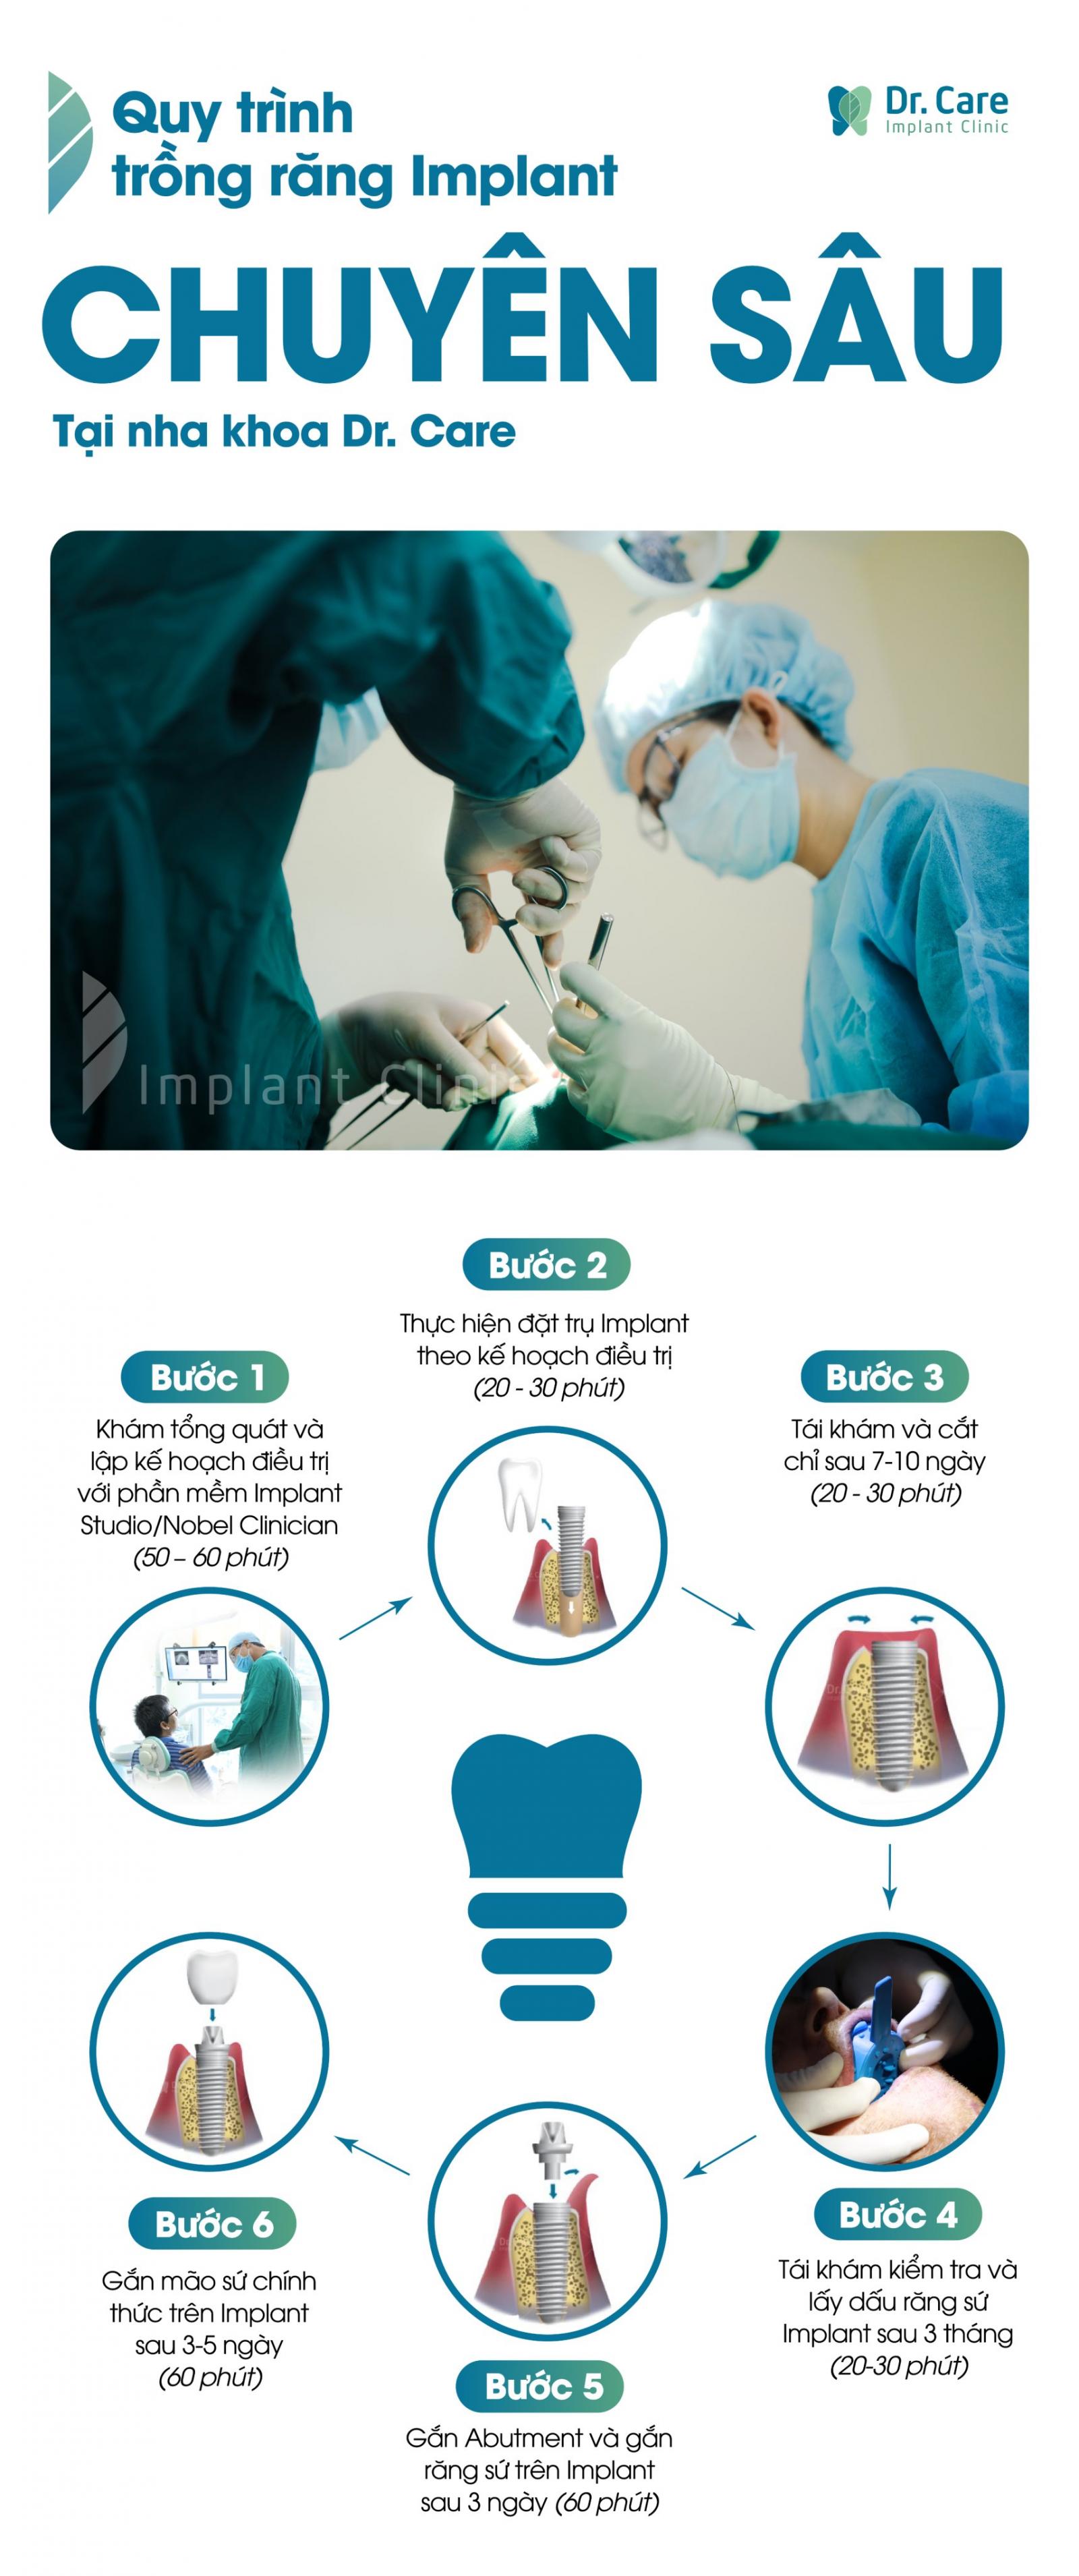 Quy trình trồng răng Implant tại nha khoa Dr. Care bao gồm các bước sau: